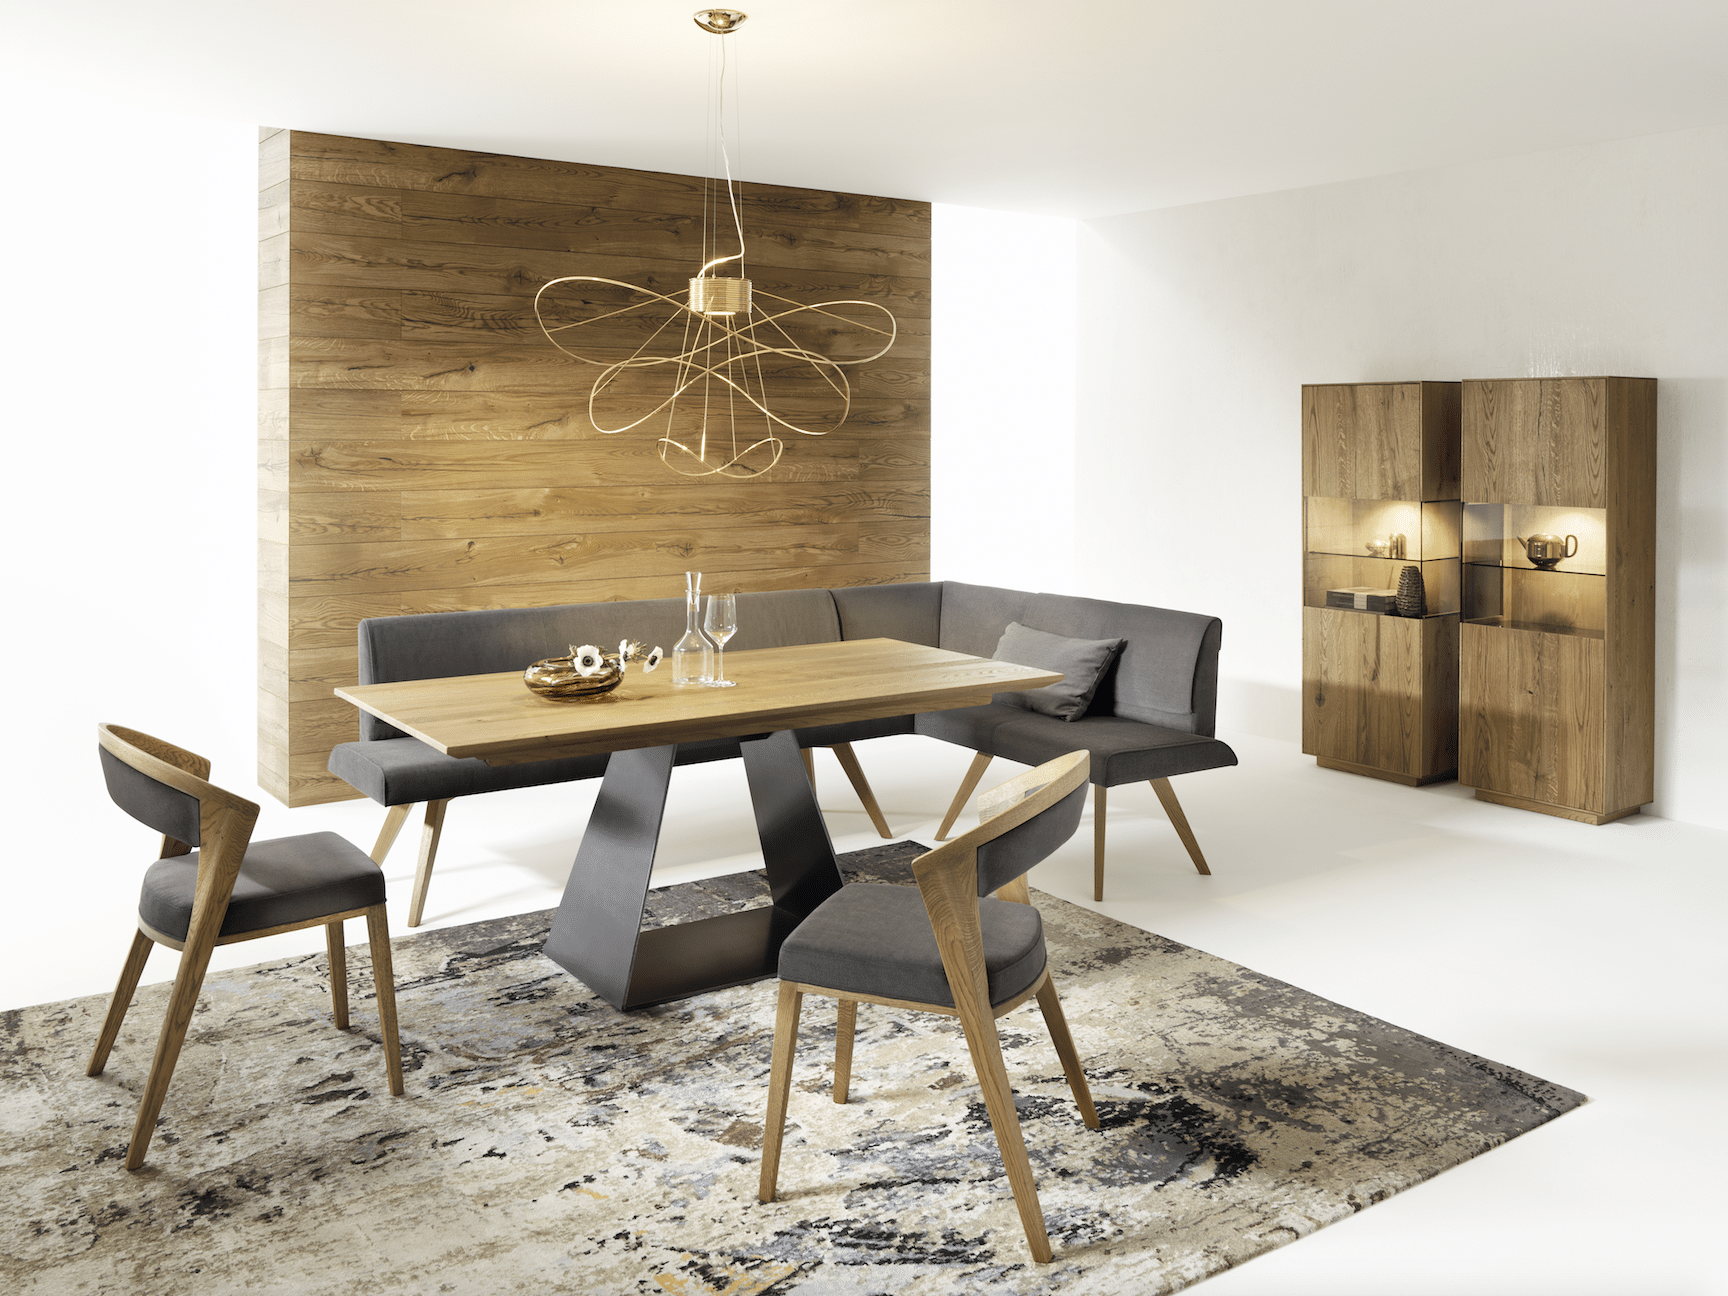 WOHNHAUS Grill & Ronacher zeigt ein modern-edles Esszimmer mit formschönem Tisch, einer Sitzbank und Stühlen von ANREI.